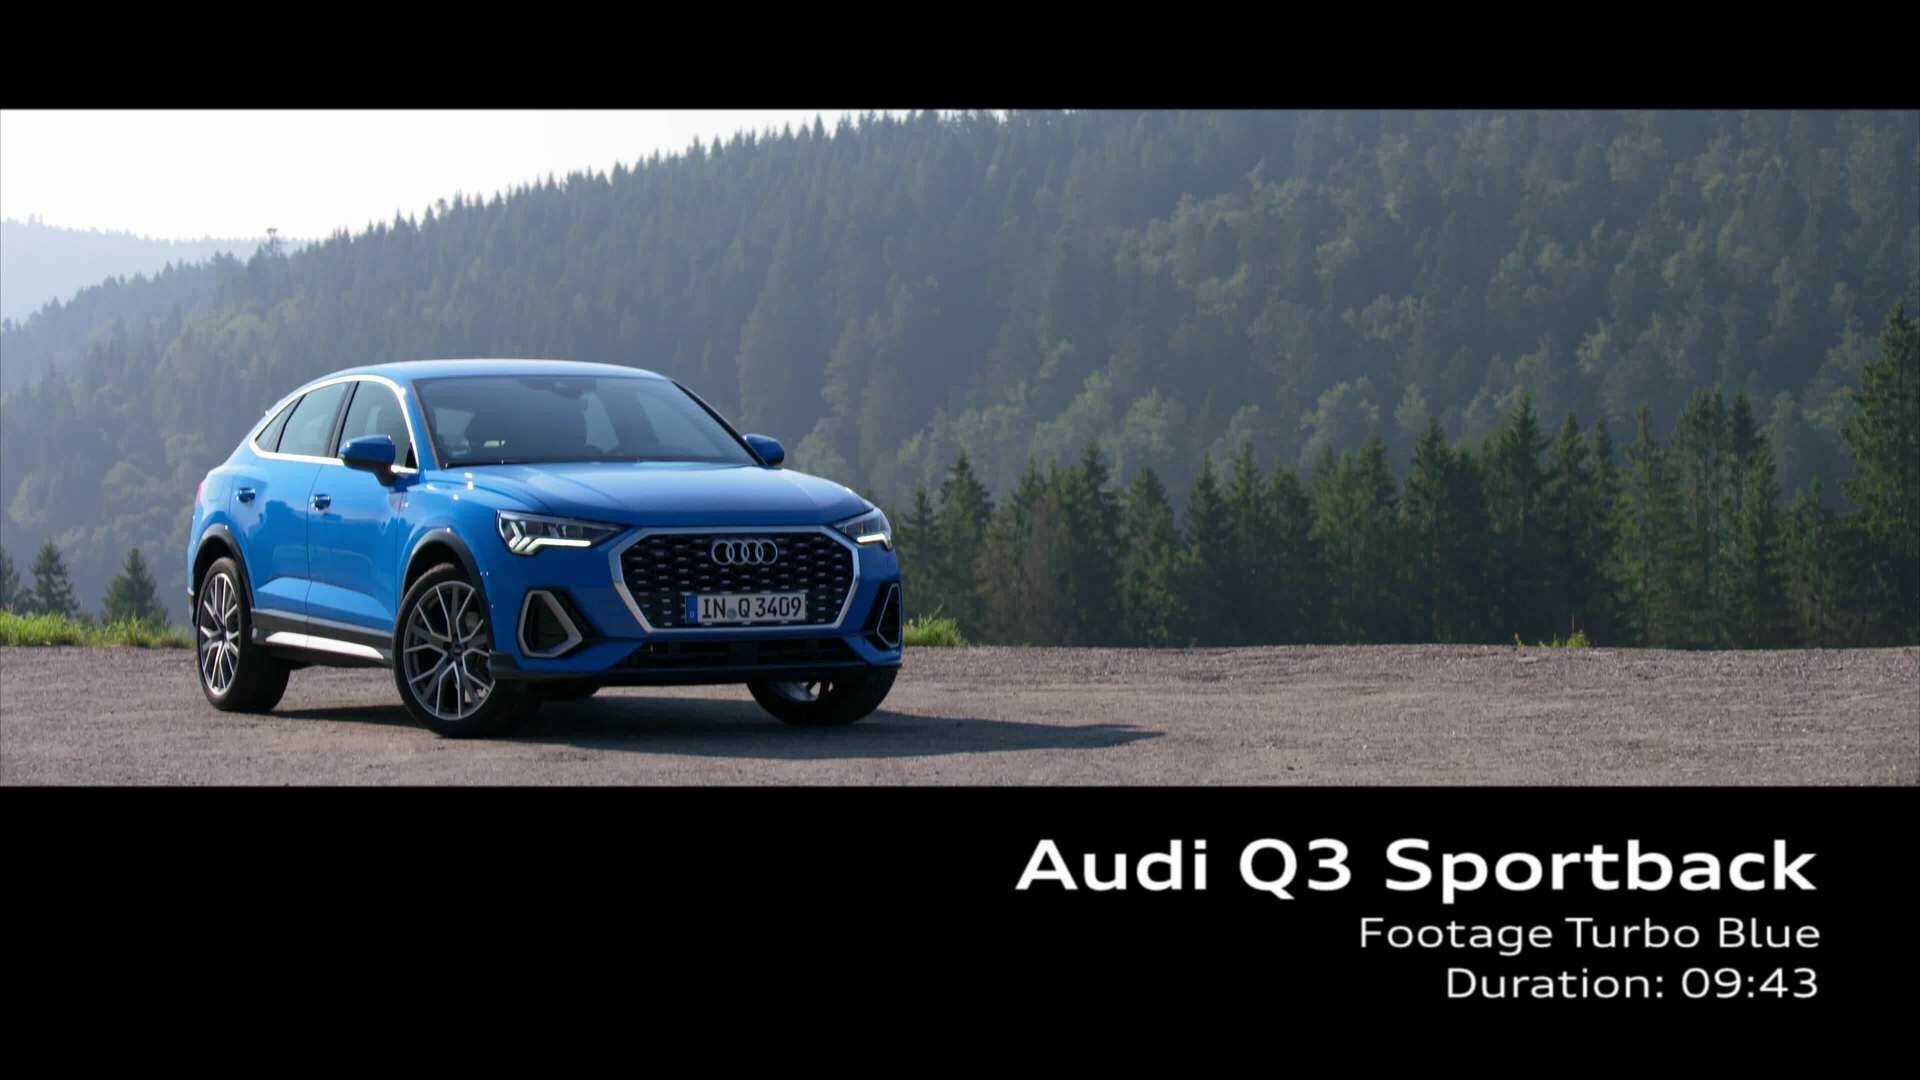 Audi Q3 Sportback Turboblau (Footage)